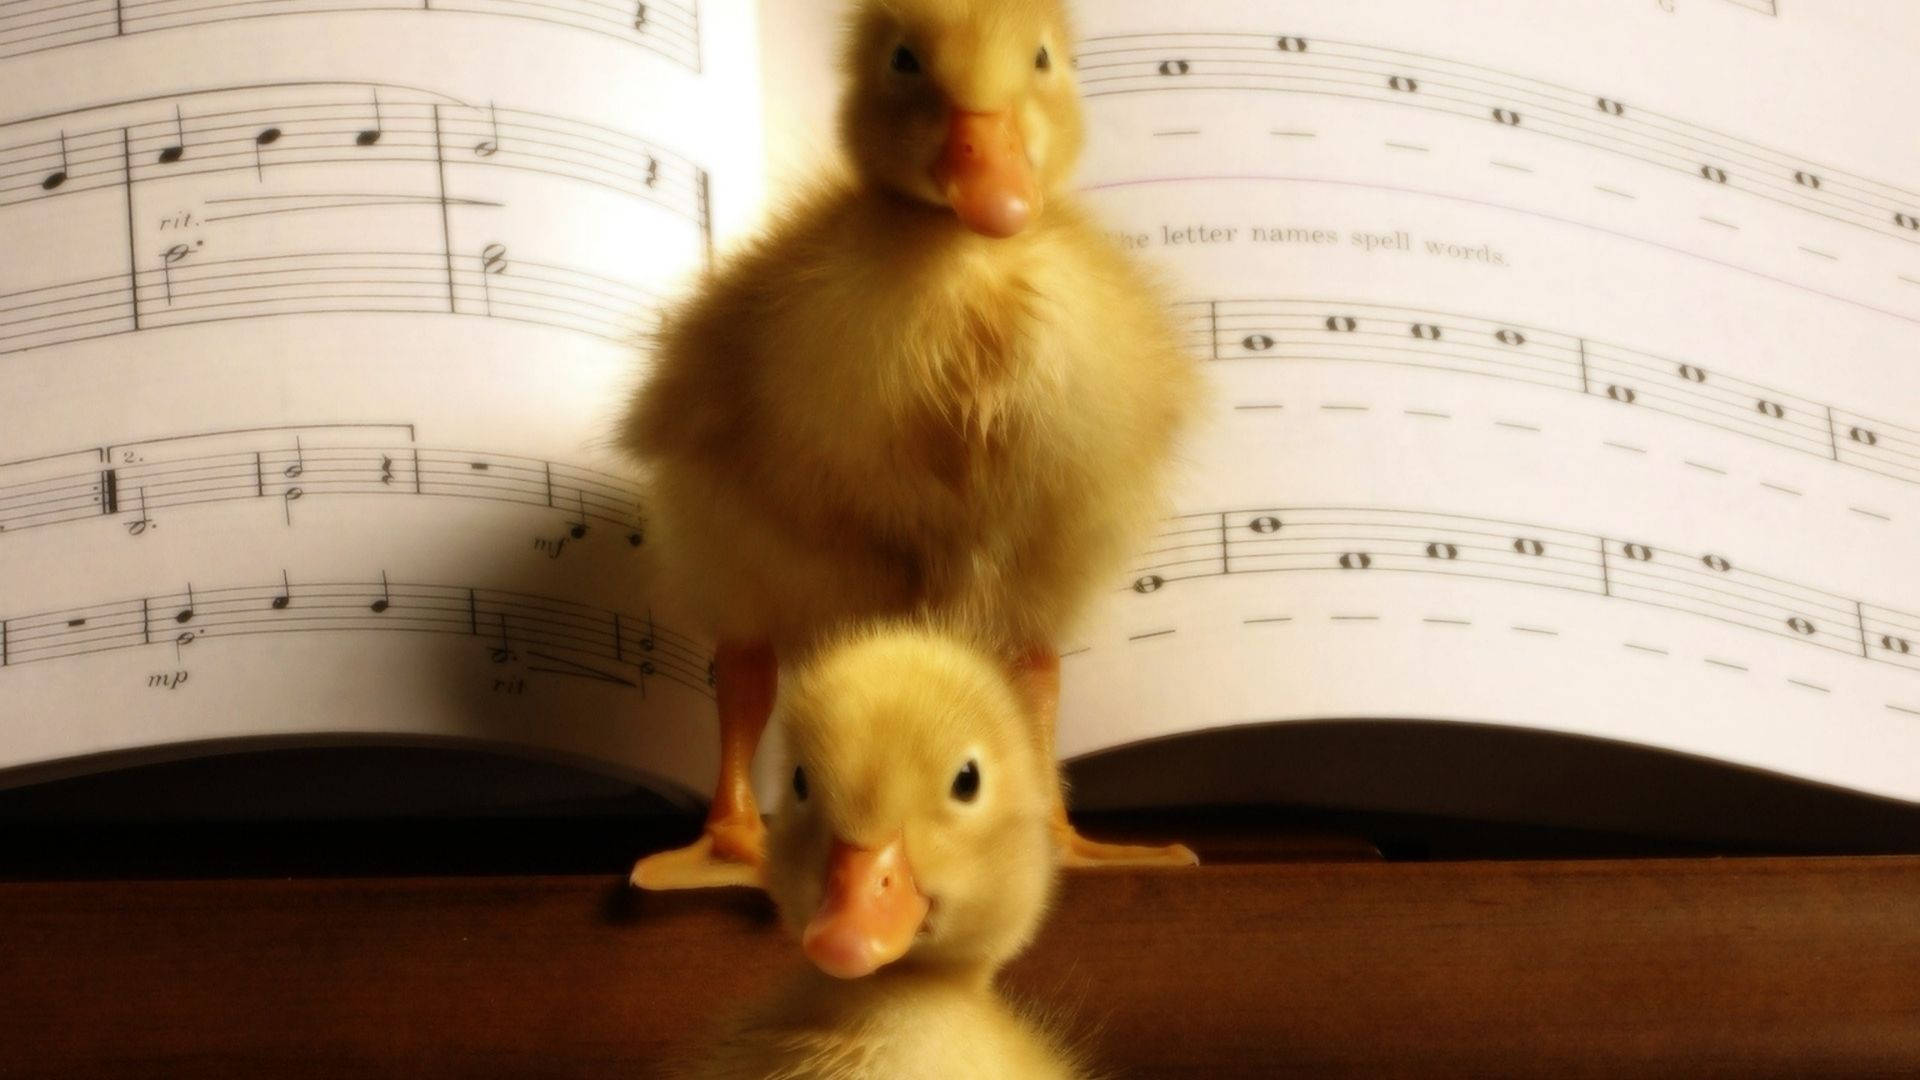 Baby Ducks Musical